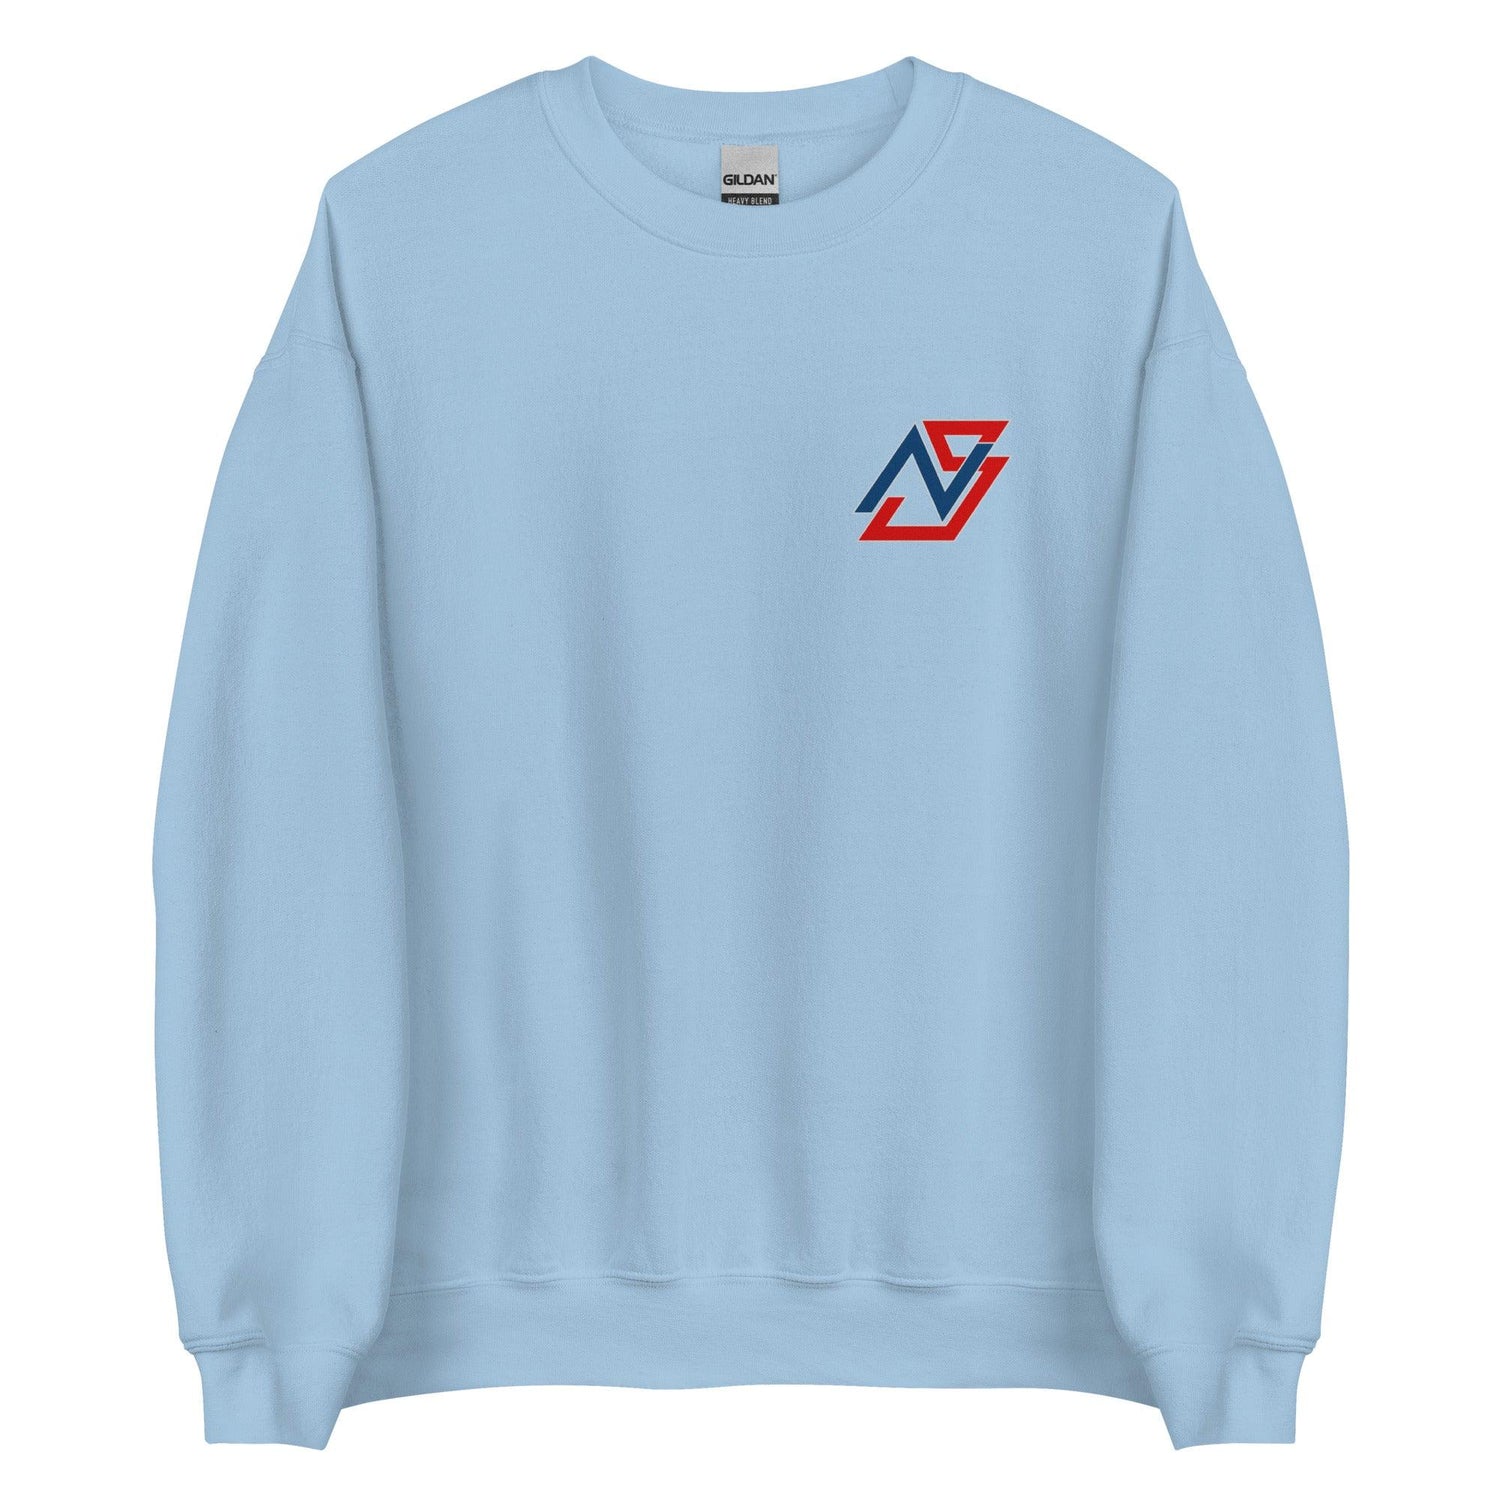 Nolan Schanuel “NS” Sweatshirt - Fan Arch